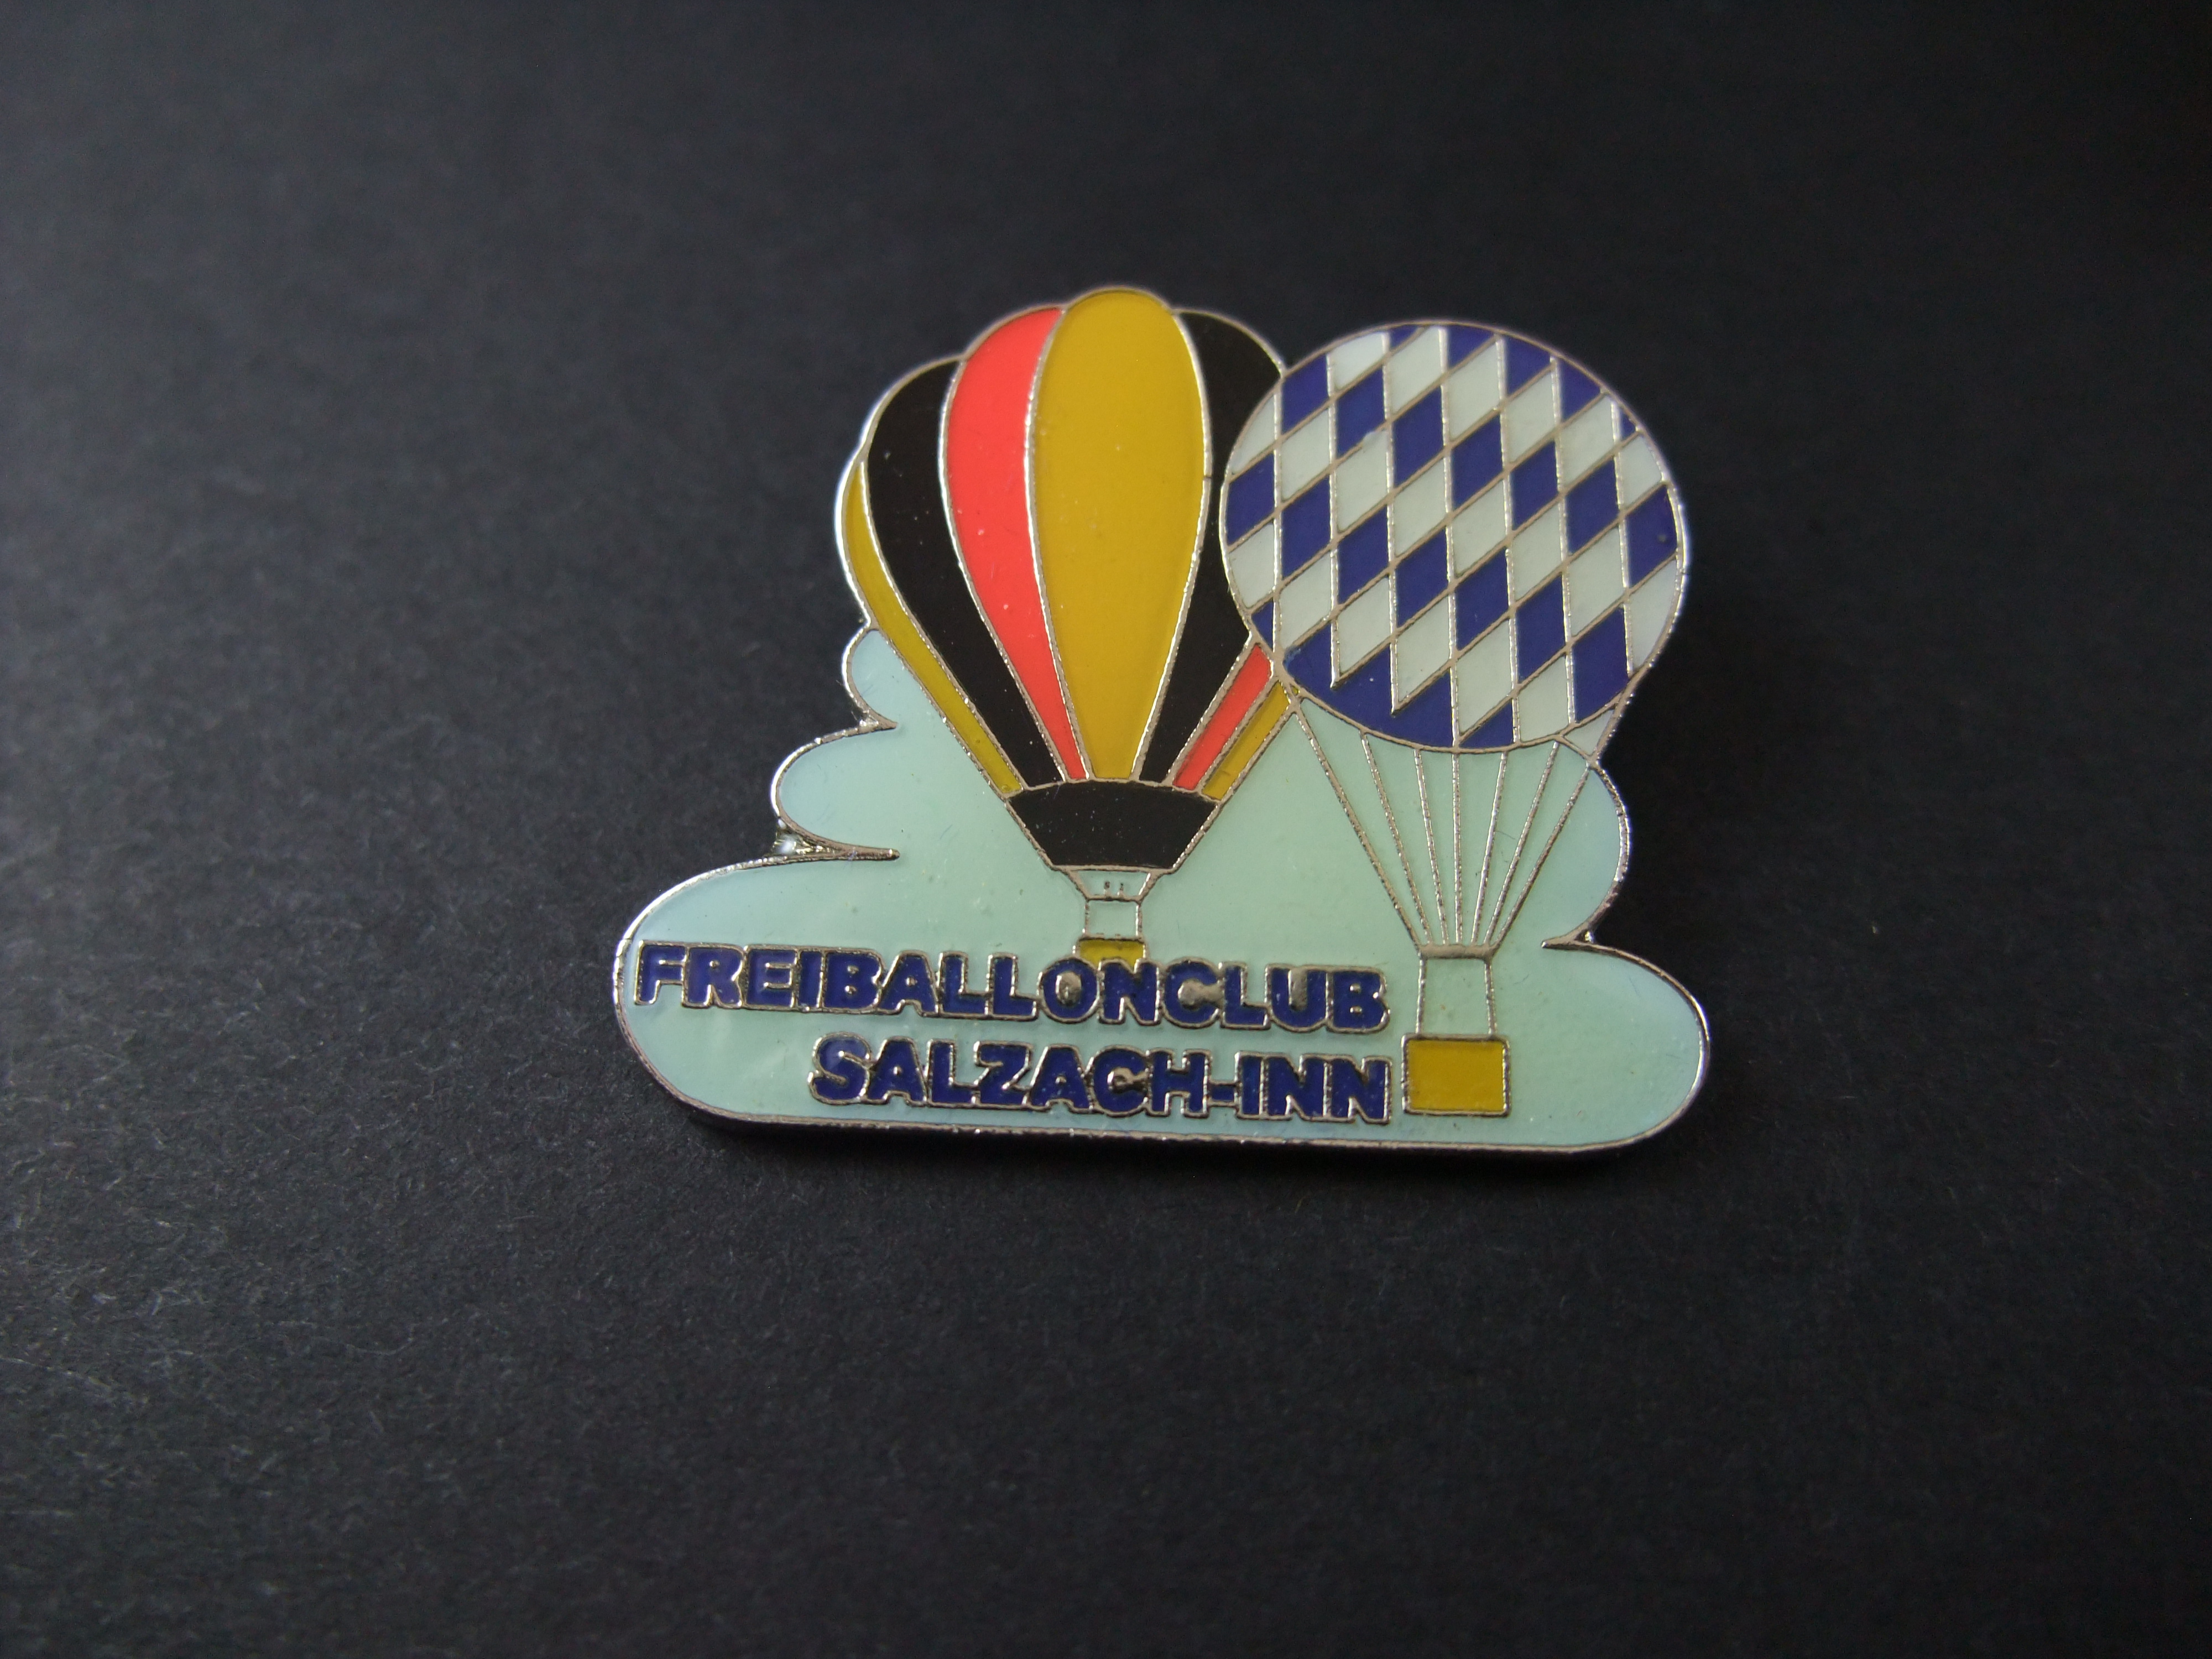 Freiballonclub Salzach-Inn, heteluchtballon